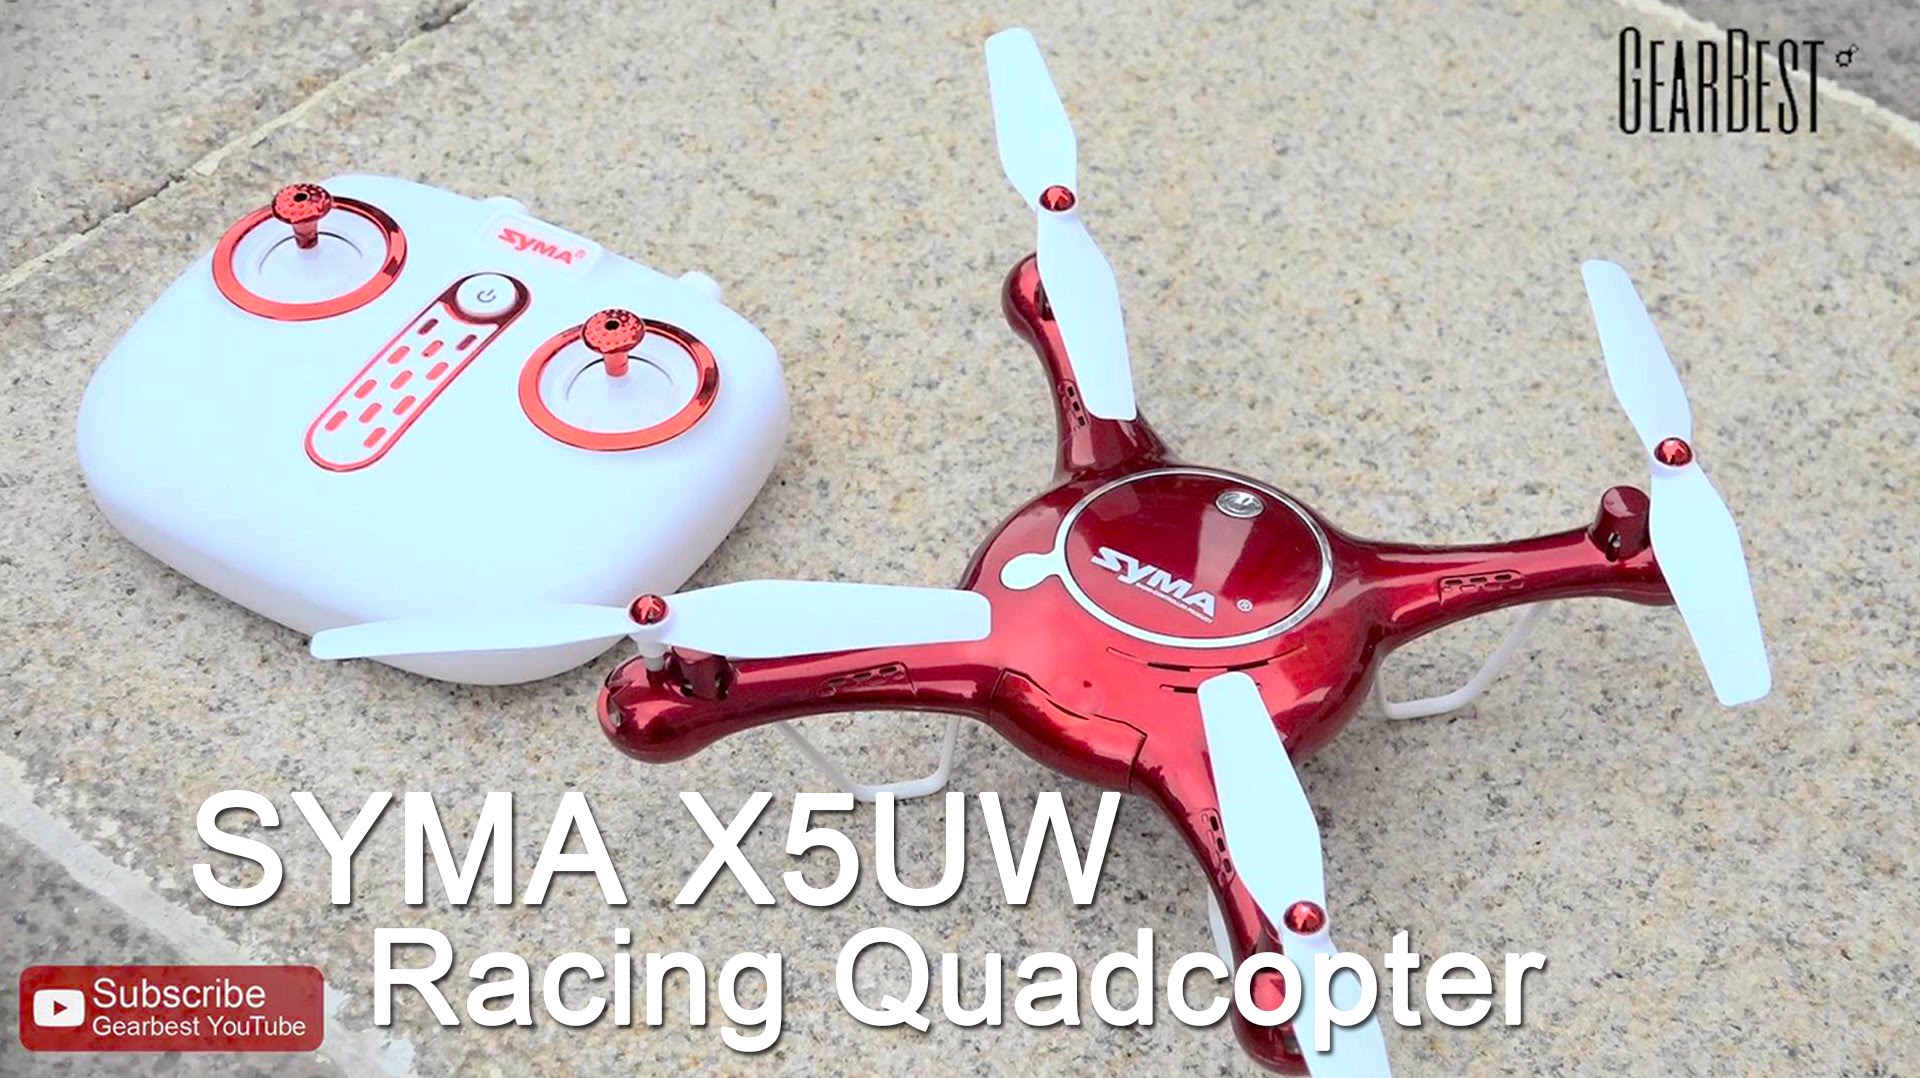 SYMA X5UW 2.4G Remote Control FPV Quadcopter – Gearbest.com